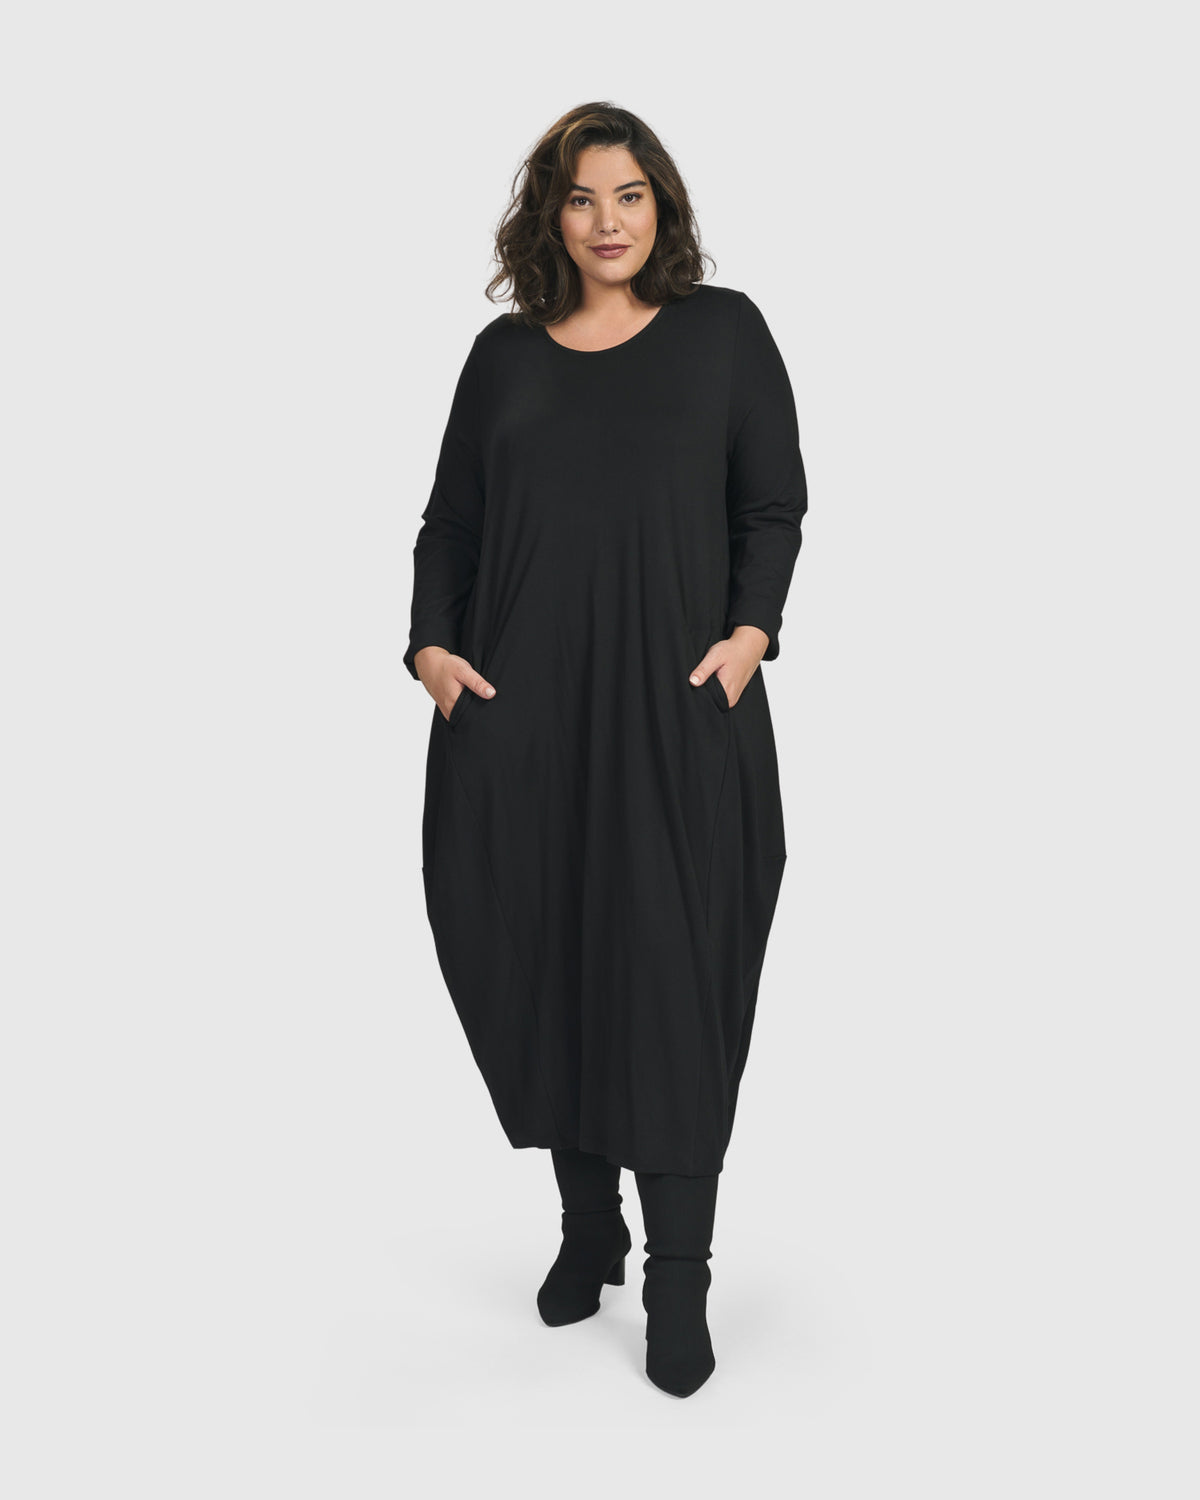 Essential Toned Up Midi Dress, Black – Alembika U.S.